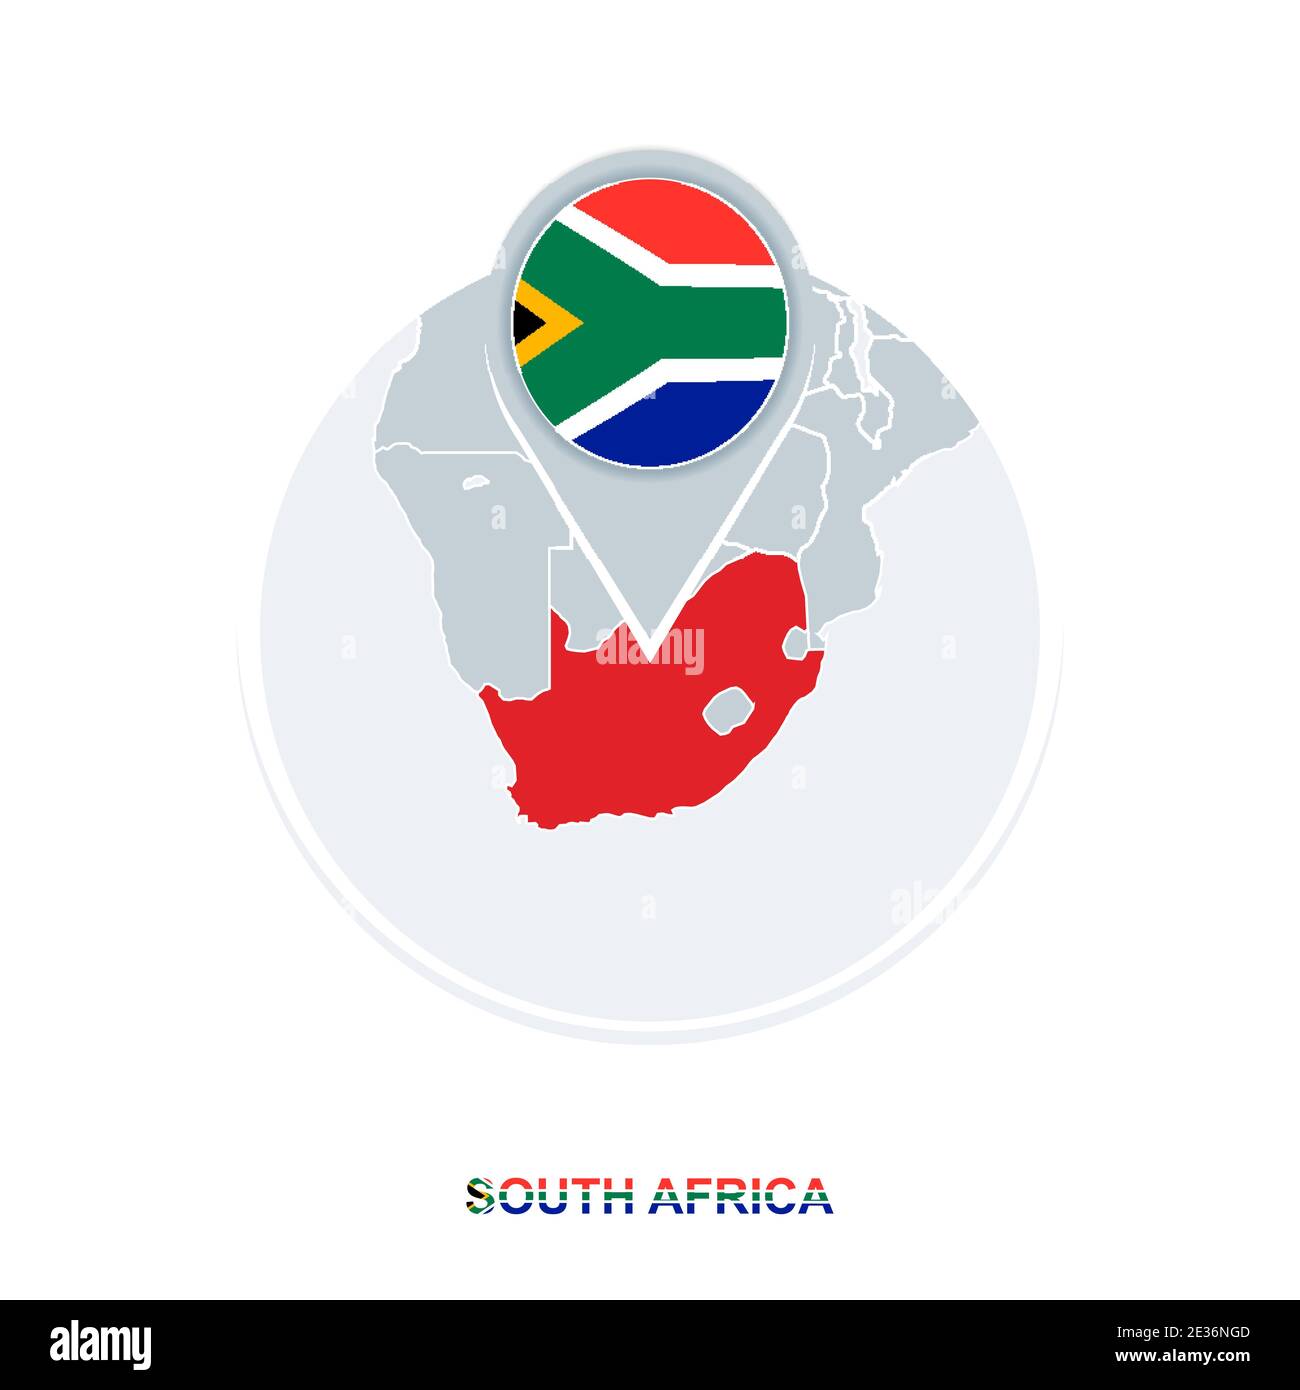 Carte et drapeau de l'Afrique du Sud, icône de carte vectorielle avec Afrique du Sud mise en évidence Illustration de Vecteur